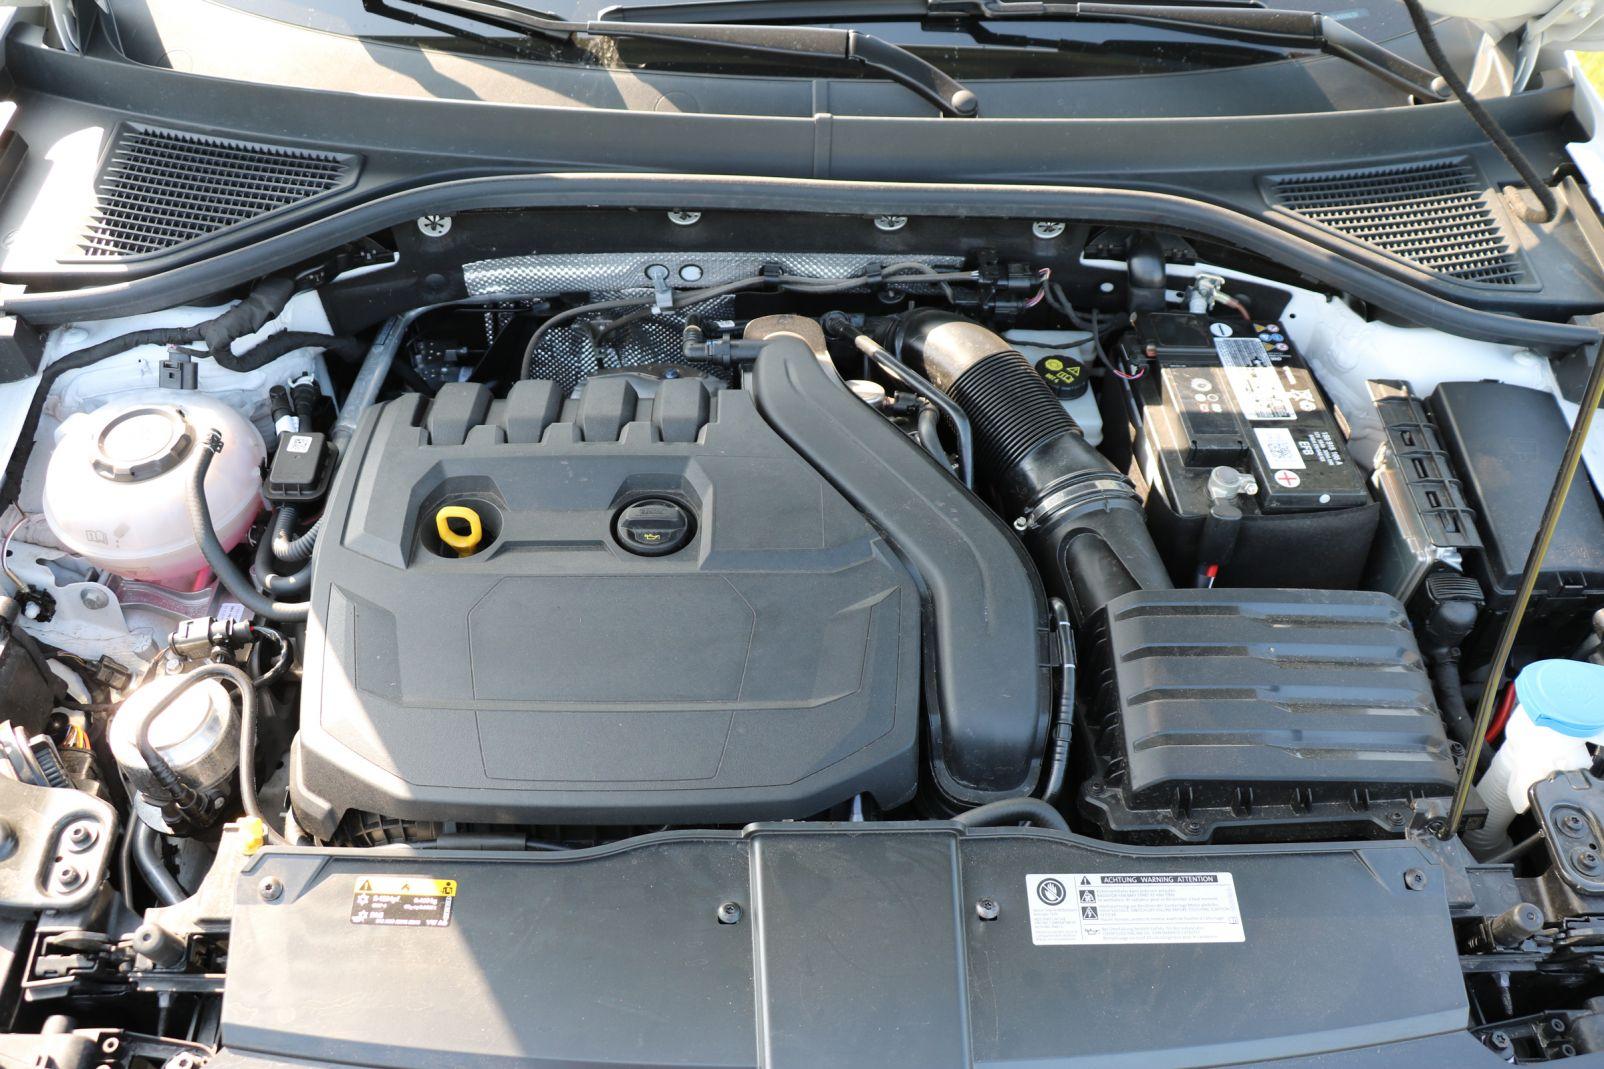 1.5 Liter Benziner - die Topmotorisierung im VW T-Roc Cabriolet!